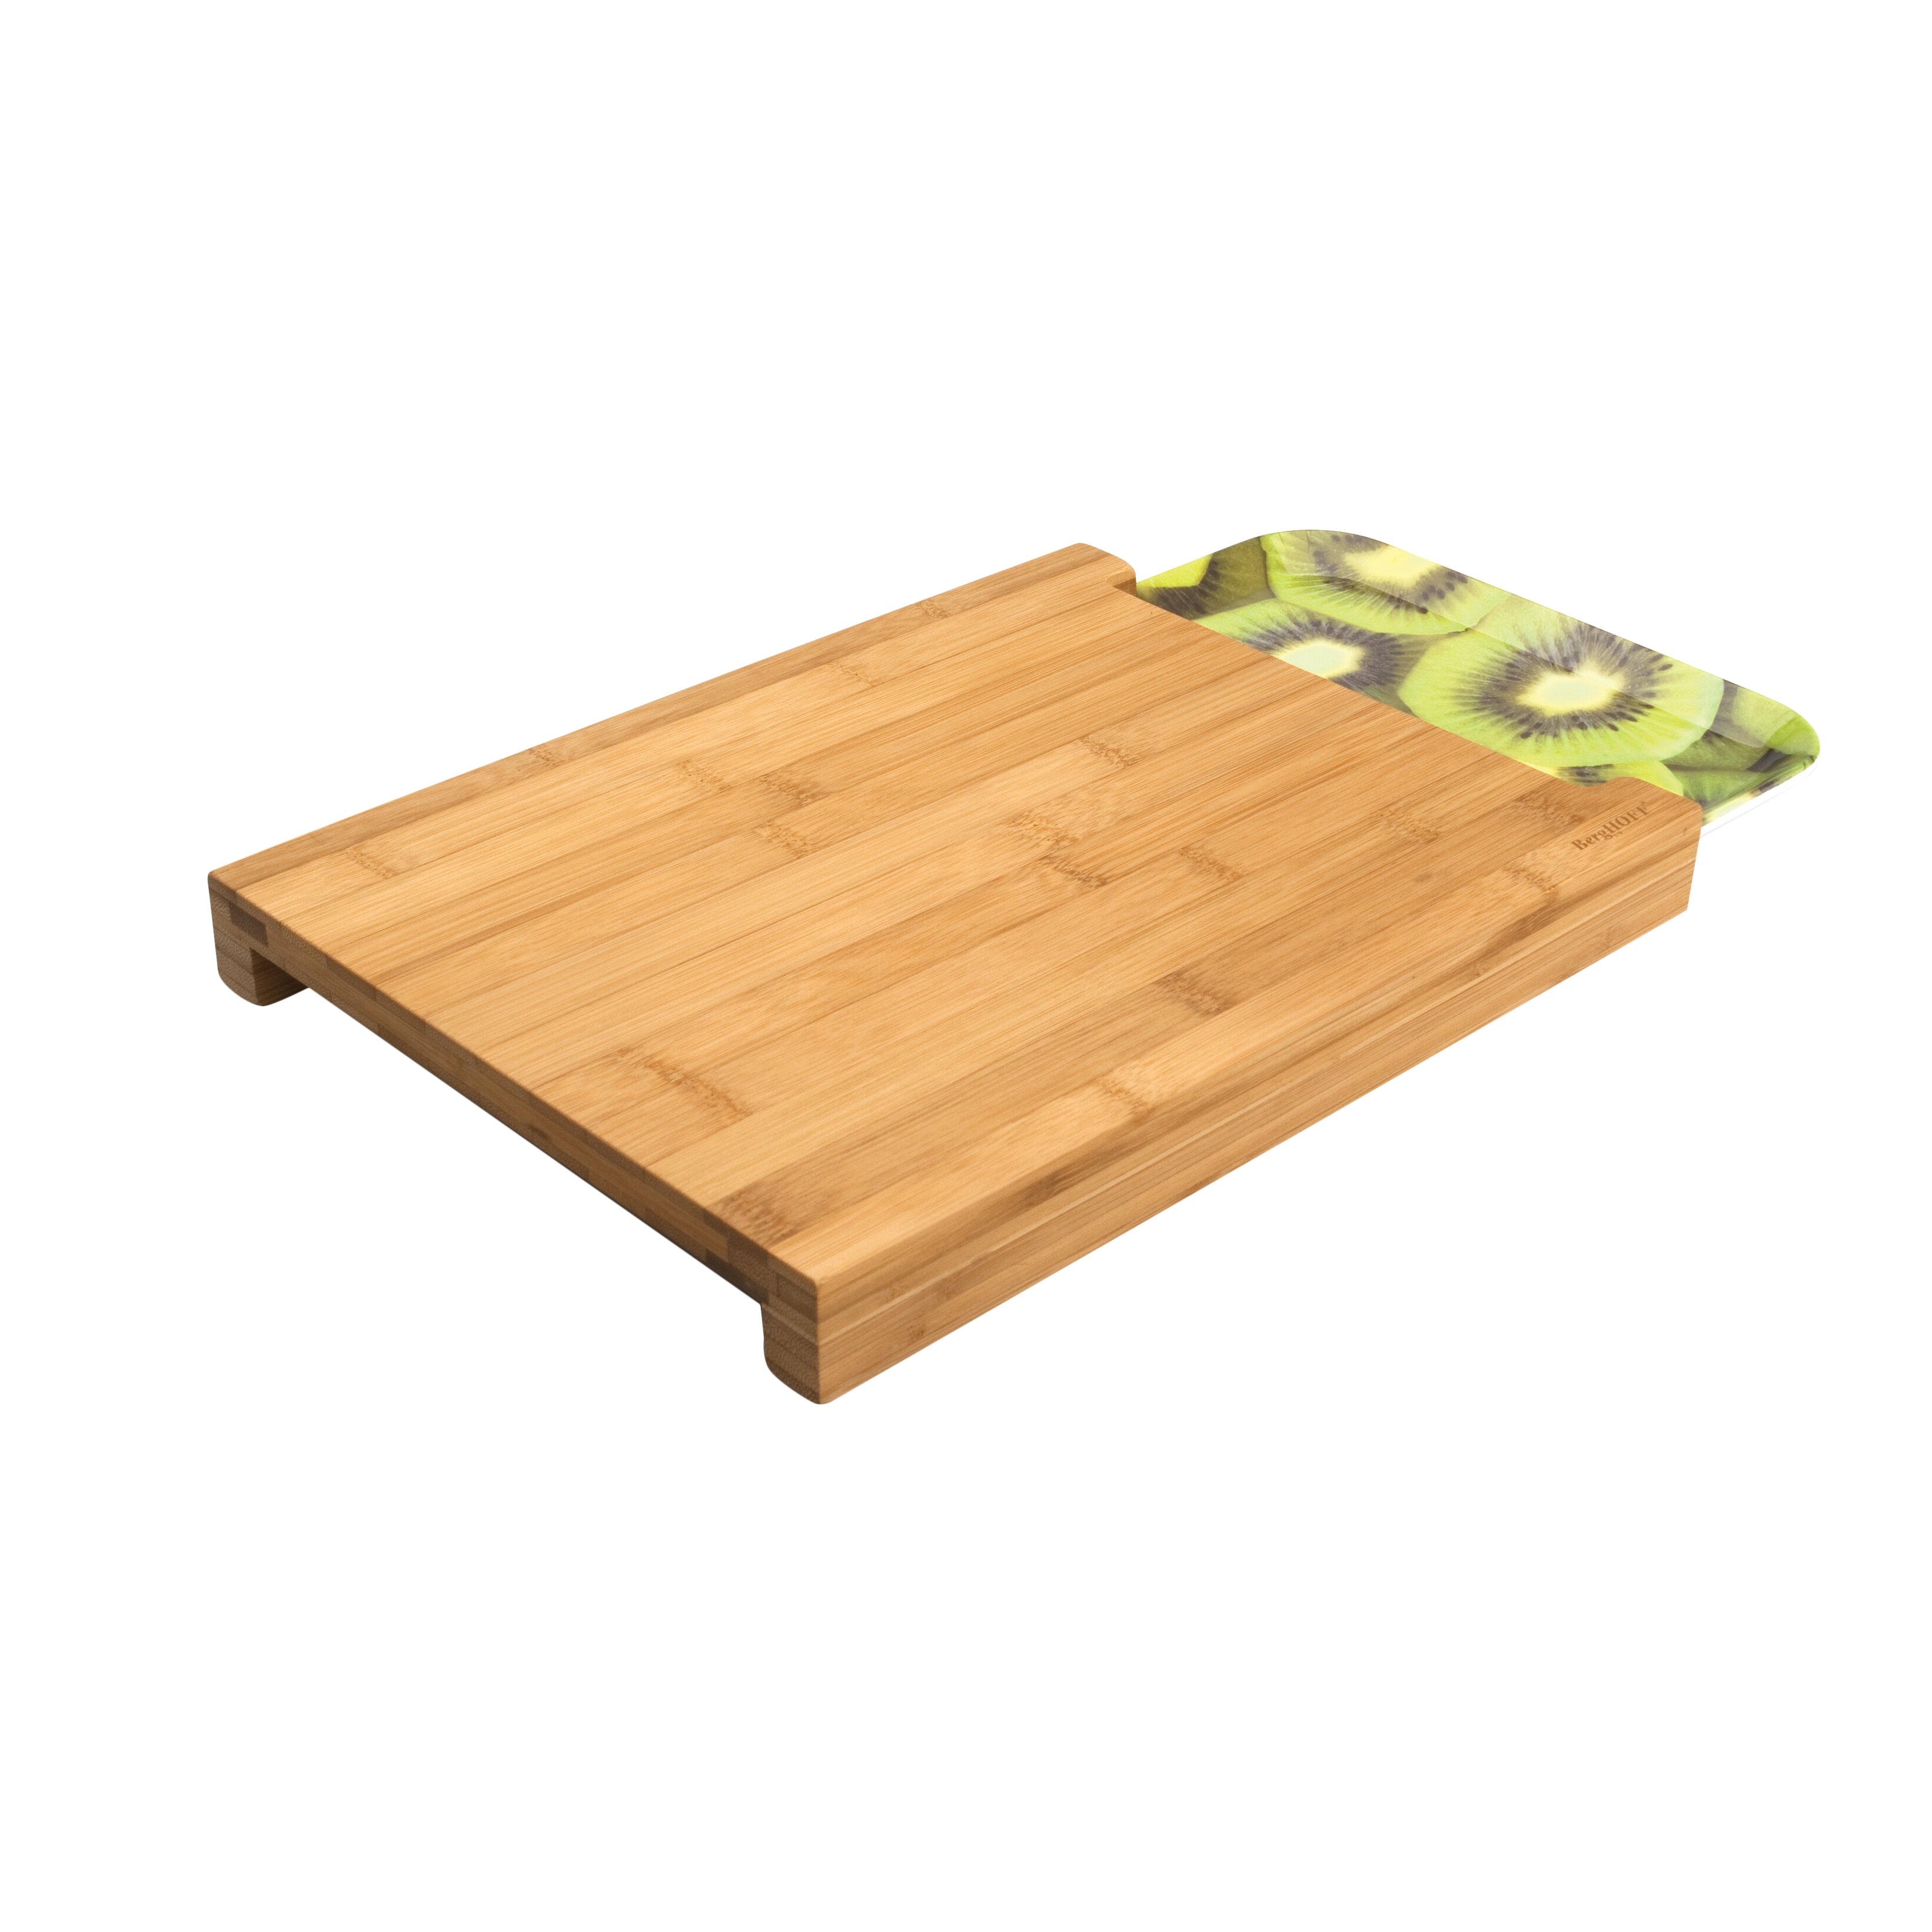 Bamboo Cutting Boards | Wayfair